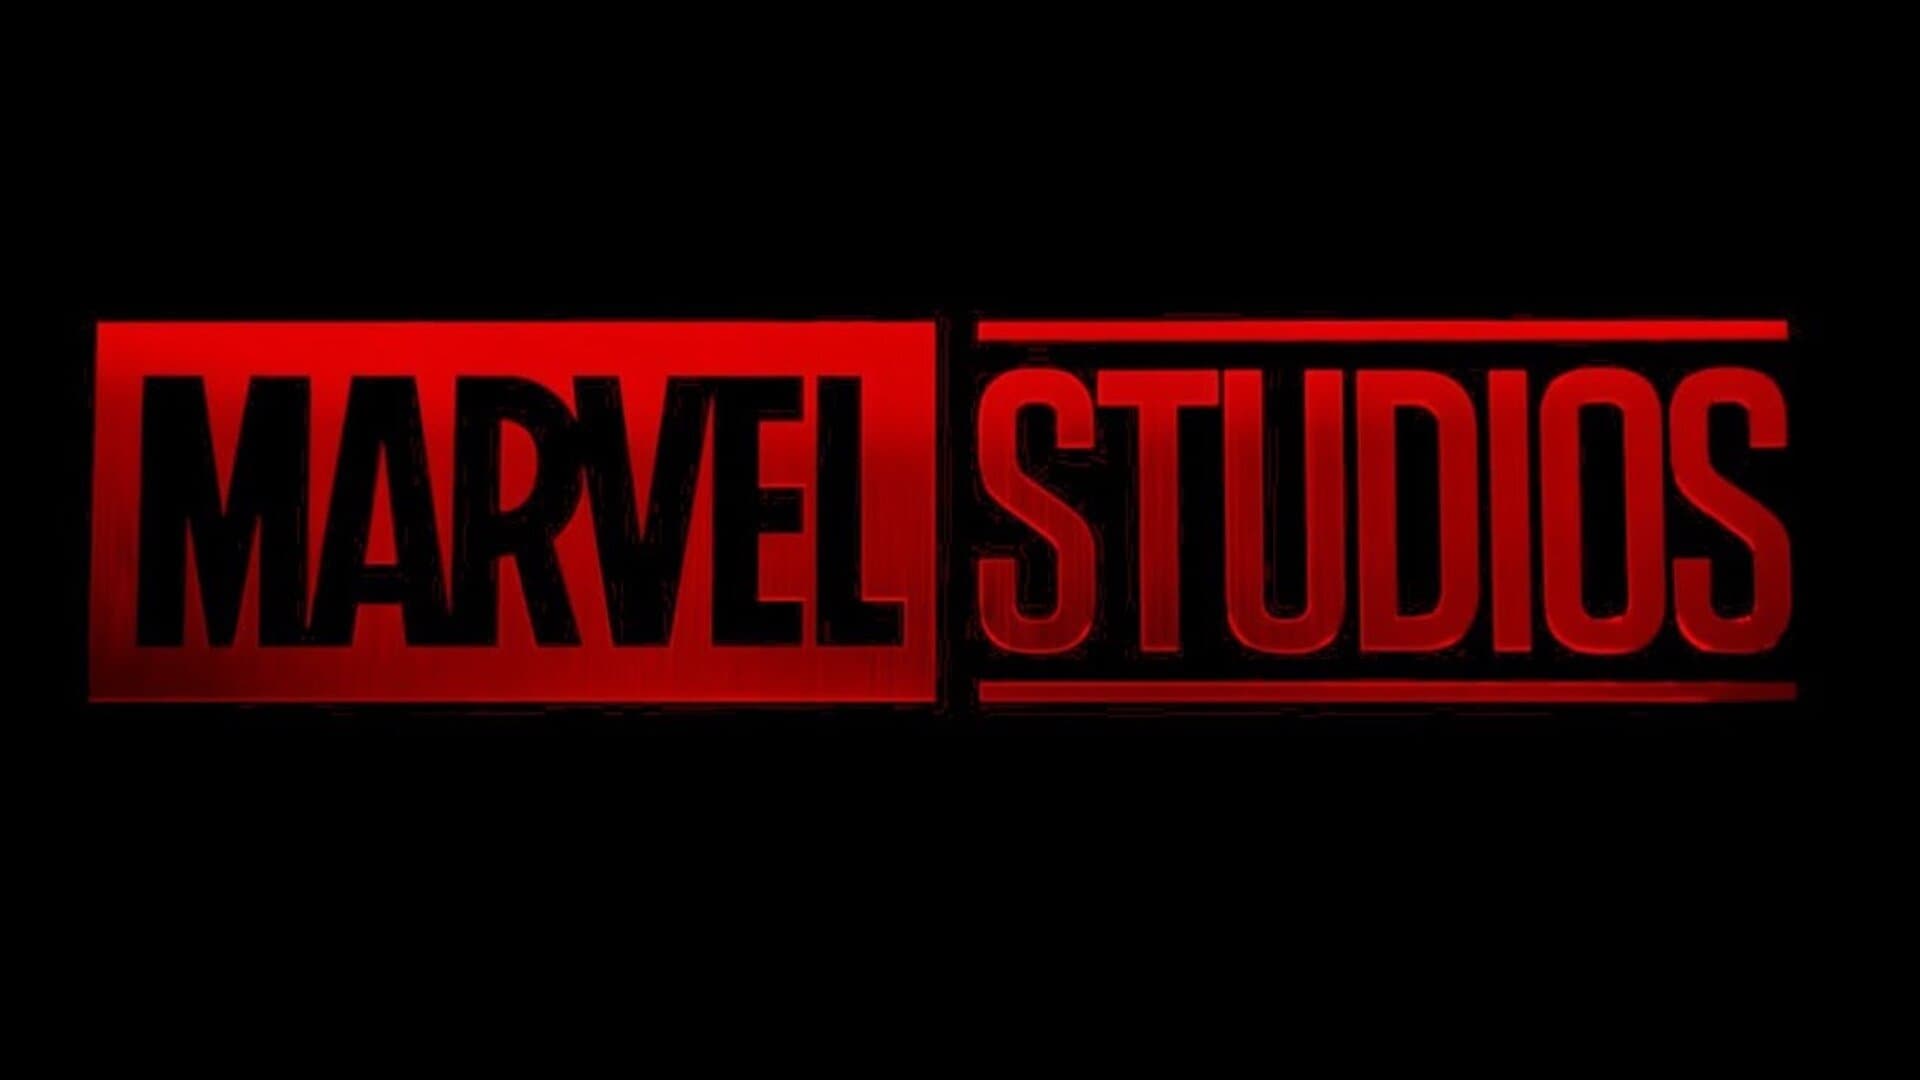 Календарь премьер Marvel на 2023 и 2024 год